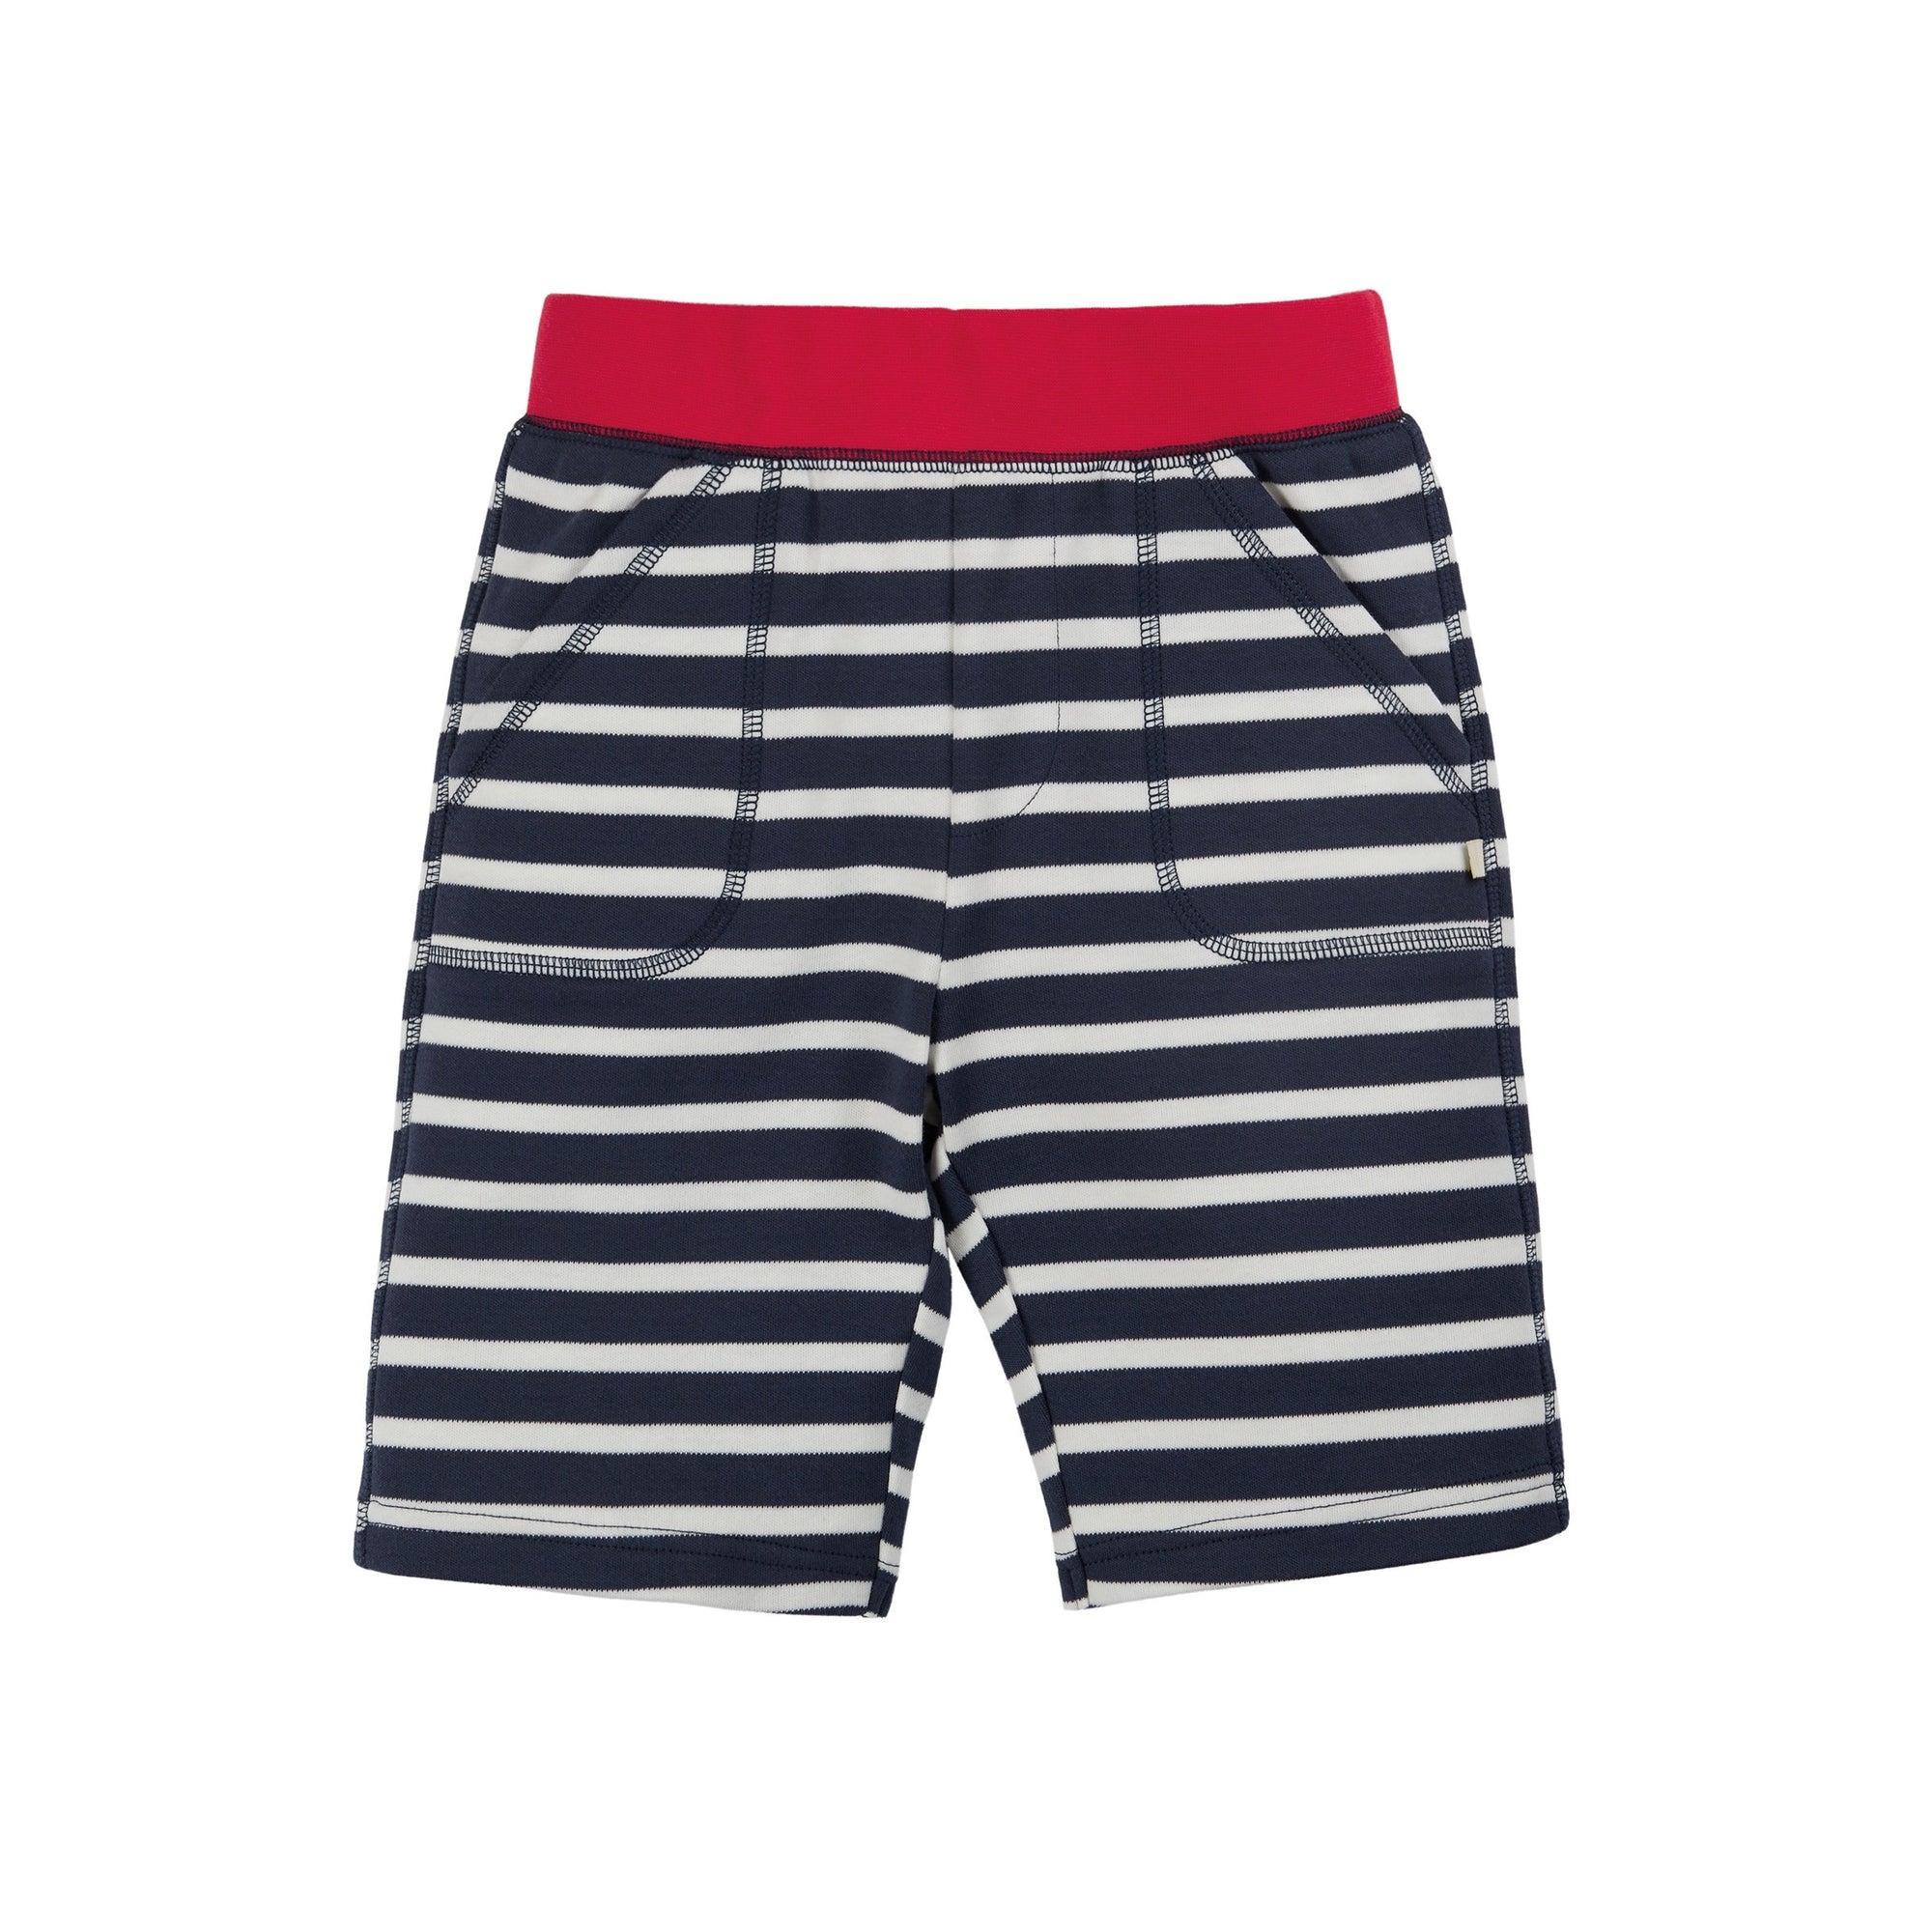 Frugi Favourite Shorts Shs205ist Navy Stripe Clothing 2-3YRS / Navy,3-4YRS / Navy,4-5YRS / Navy,5-6YRS / Navy,6-7YRS / Navy,7-8YRS / Navy